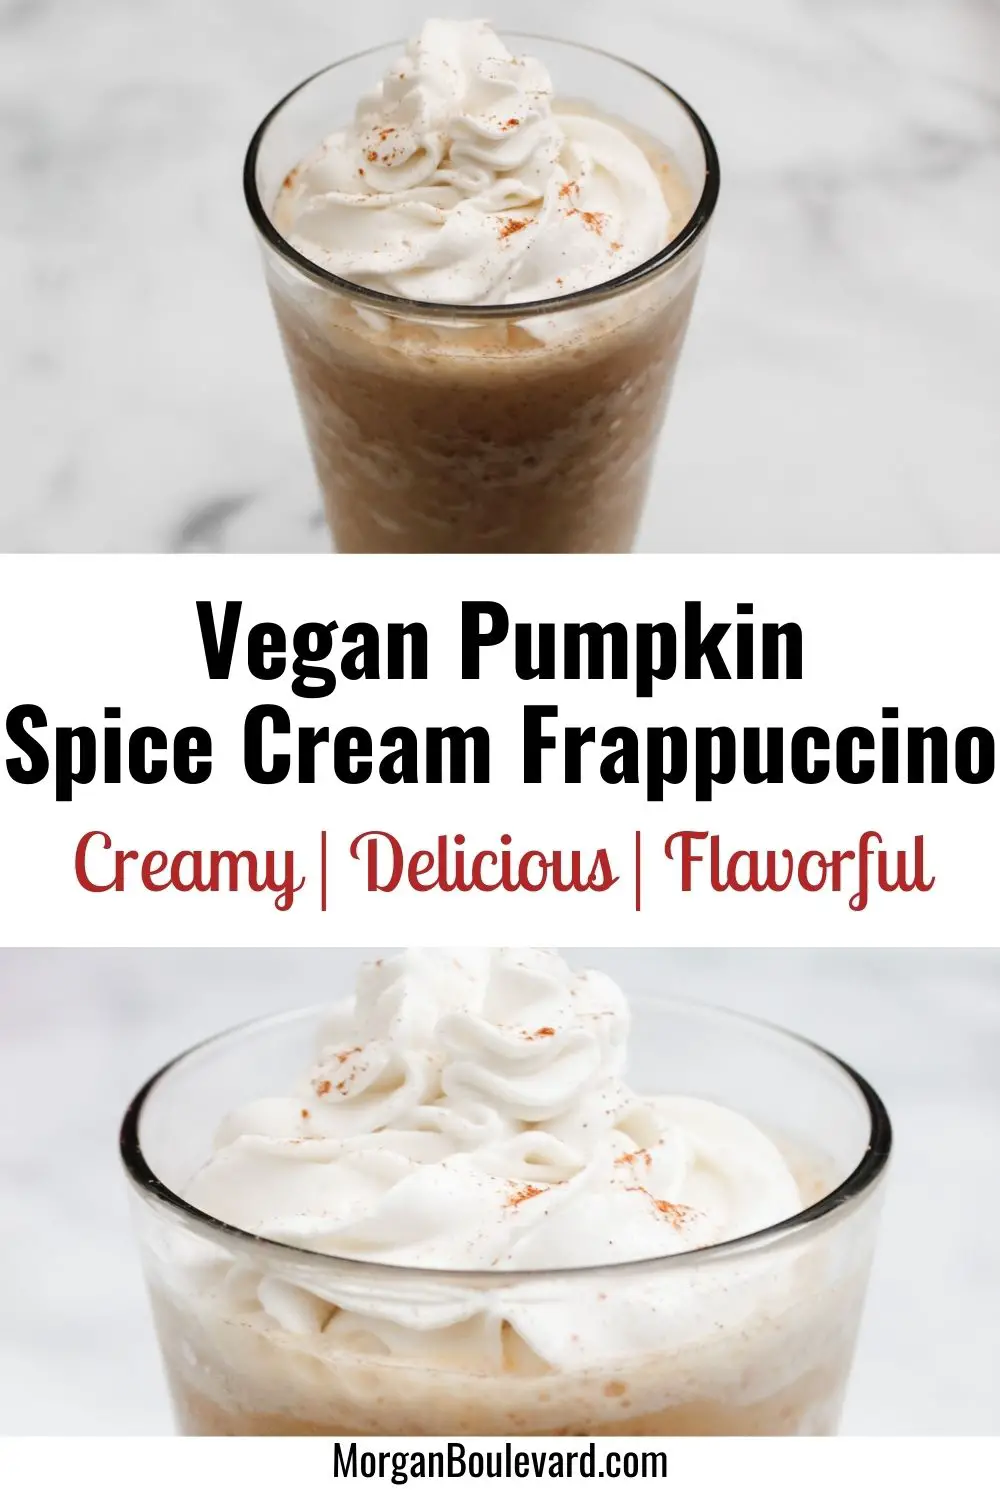 Quick Vegan Pumpkin Spice Cream Frappuccino